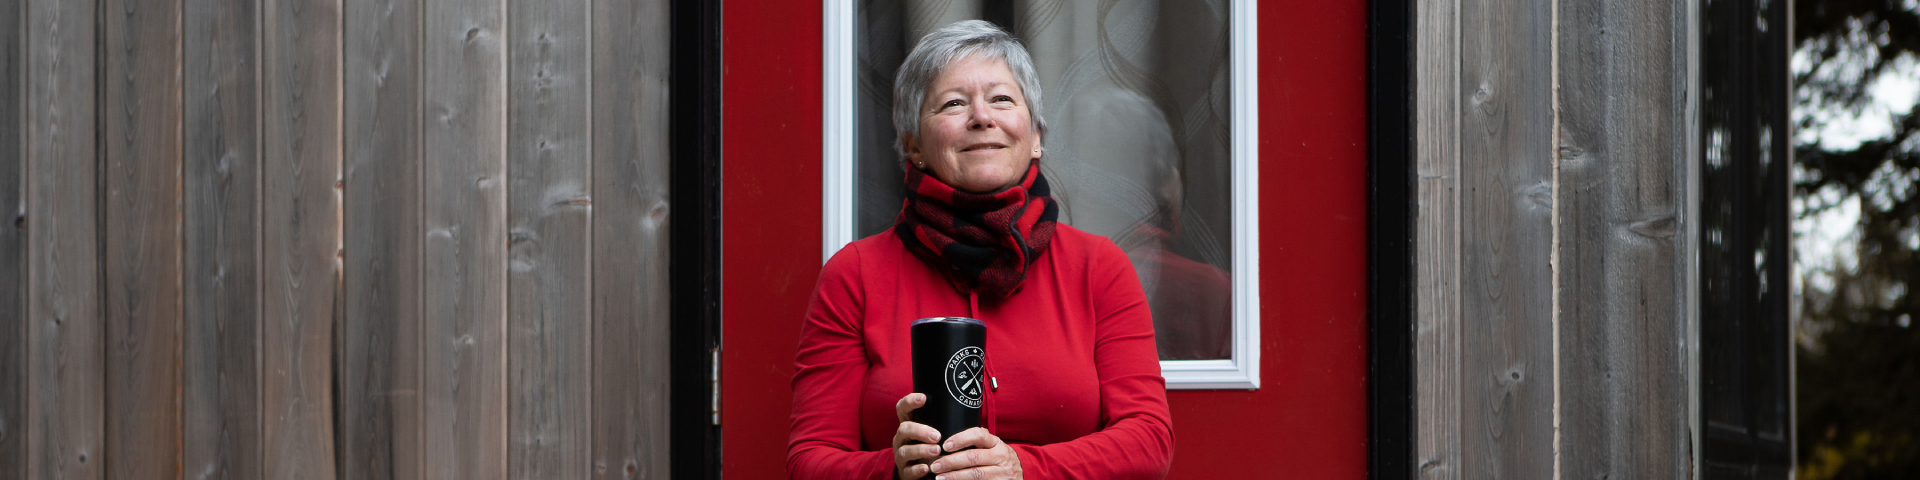 Une femme tout sourire tenant un thermos est assise sur le pas de la porte du microcube.